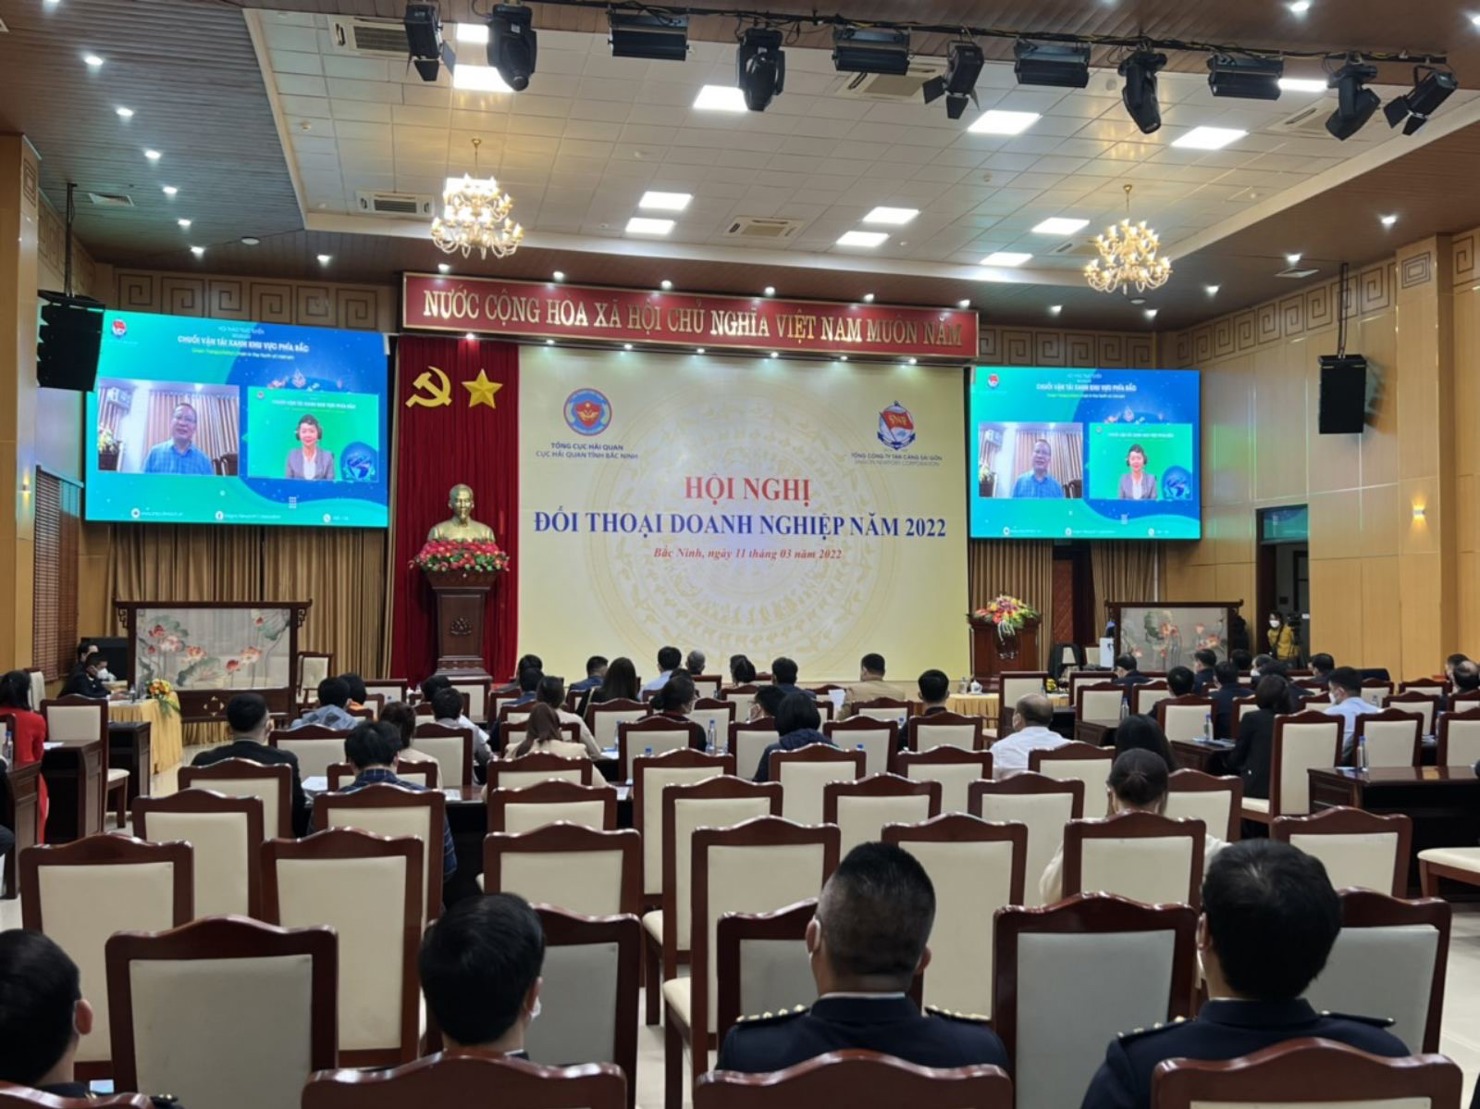 Quang cảnh Hội nghị đối thoại doanh nghiệp năm 2022 do Cục Hải quan Bắc Ninh phối hợp với Tổng Công ty Tân Cảng Sài Gòn tổ chức ngày 11/3/2022. 